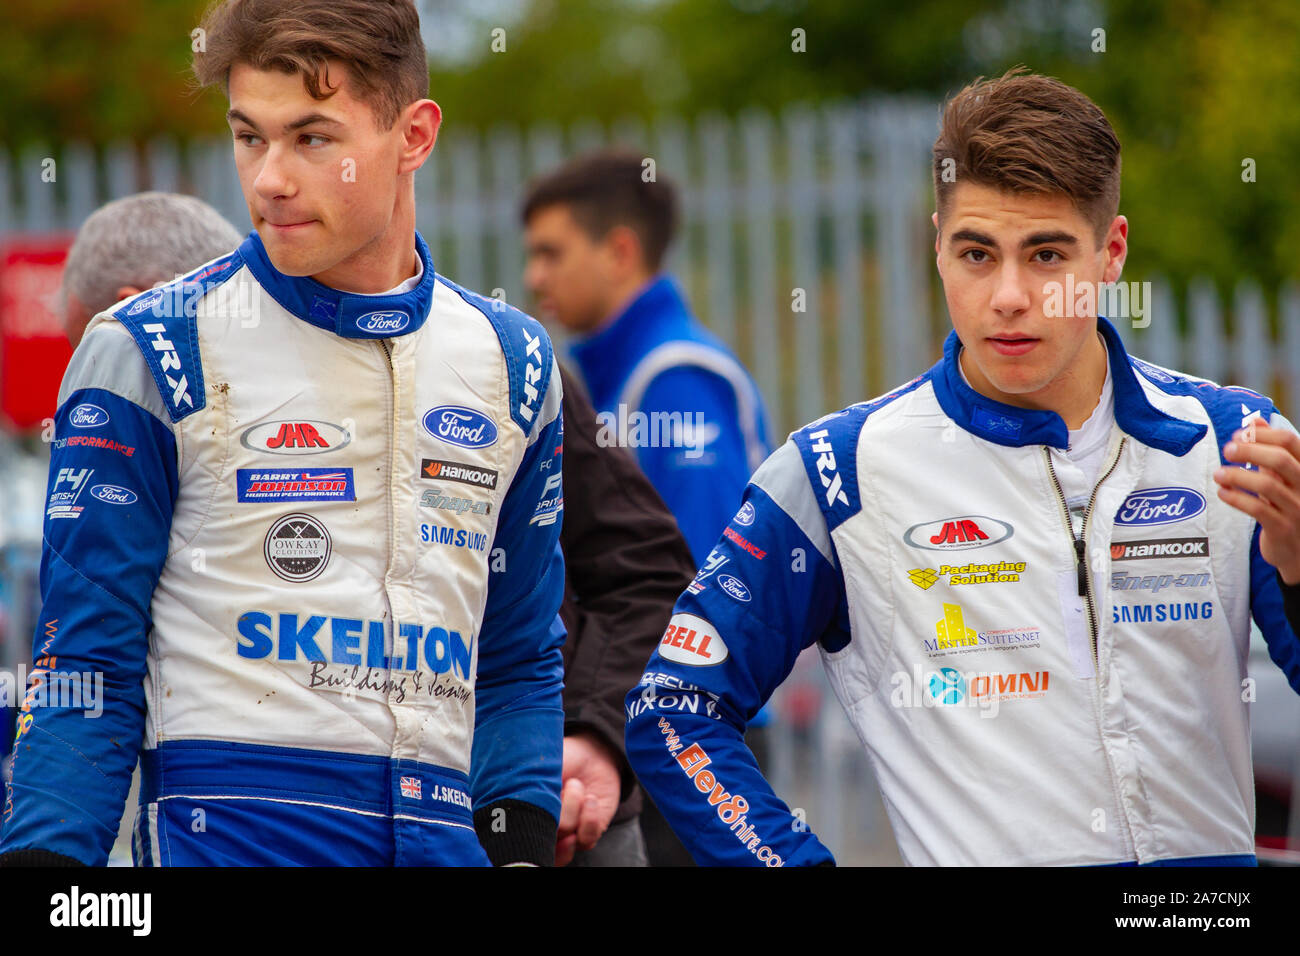 Josh Skelton und Carter Williams im Fahrerlager nach dem Qualifying. Britische Formel 4. Letzten Rennwochenende der Saison. Brands Hatch, 12 Okt 12 2019 Stockfoto